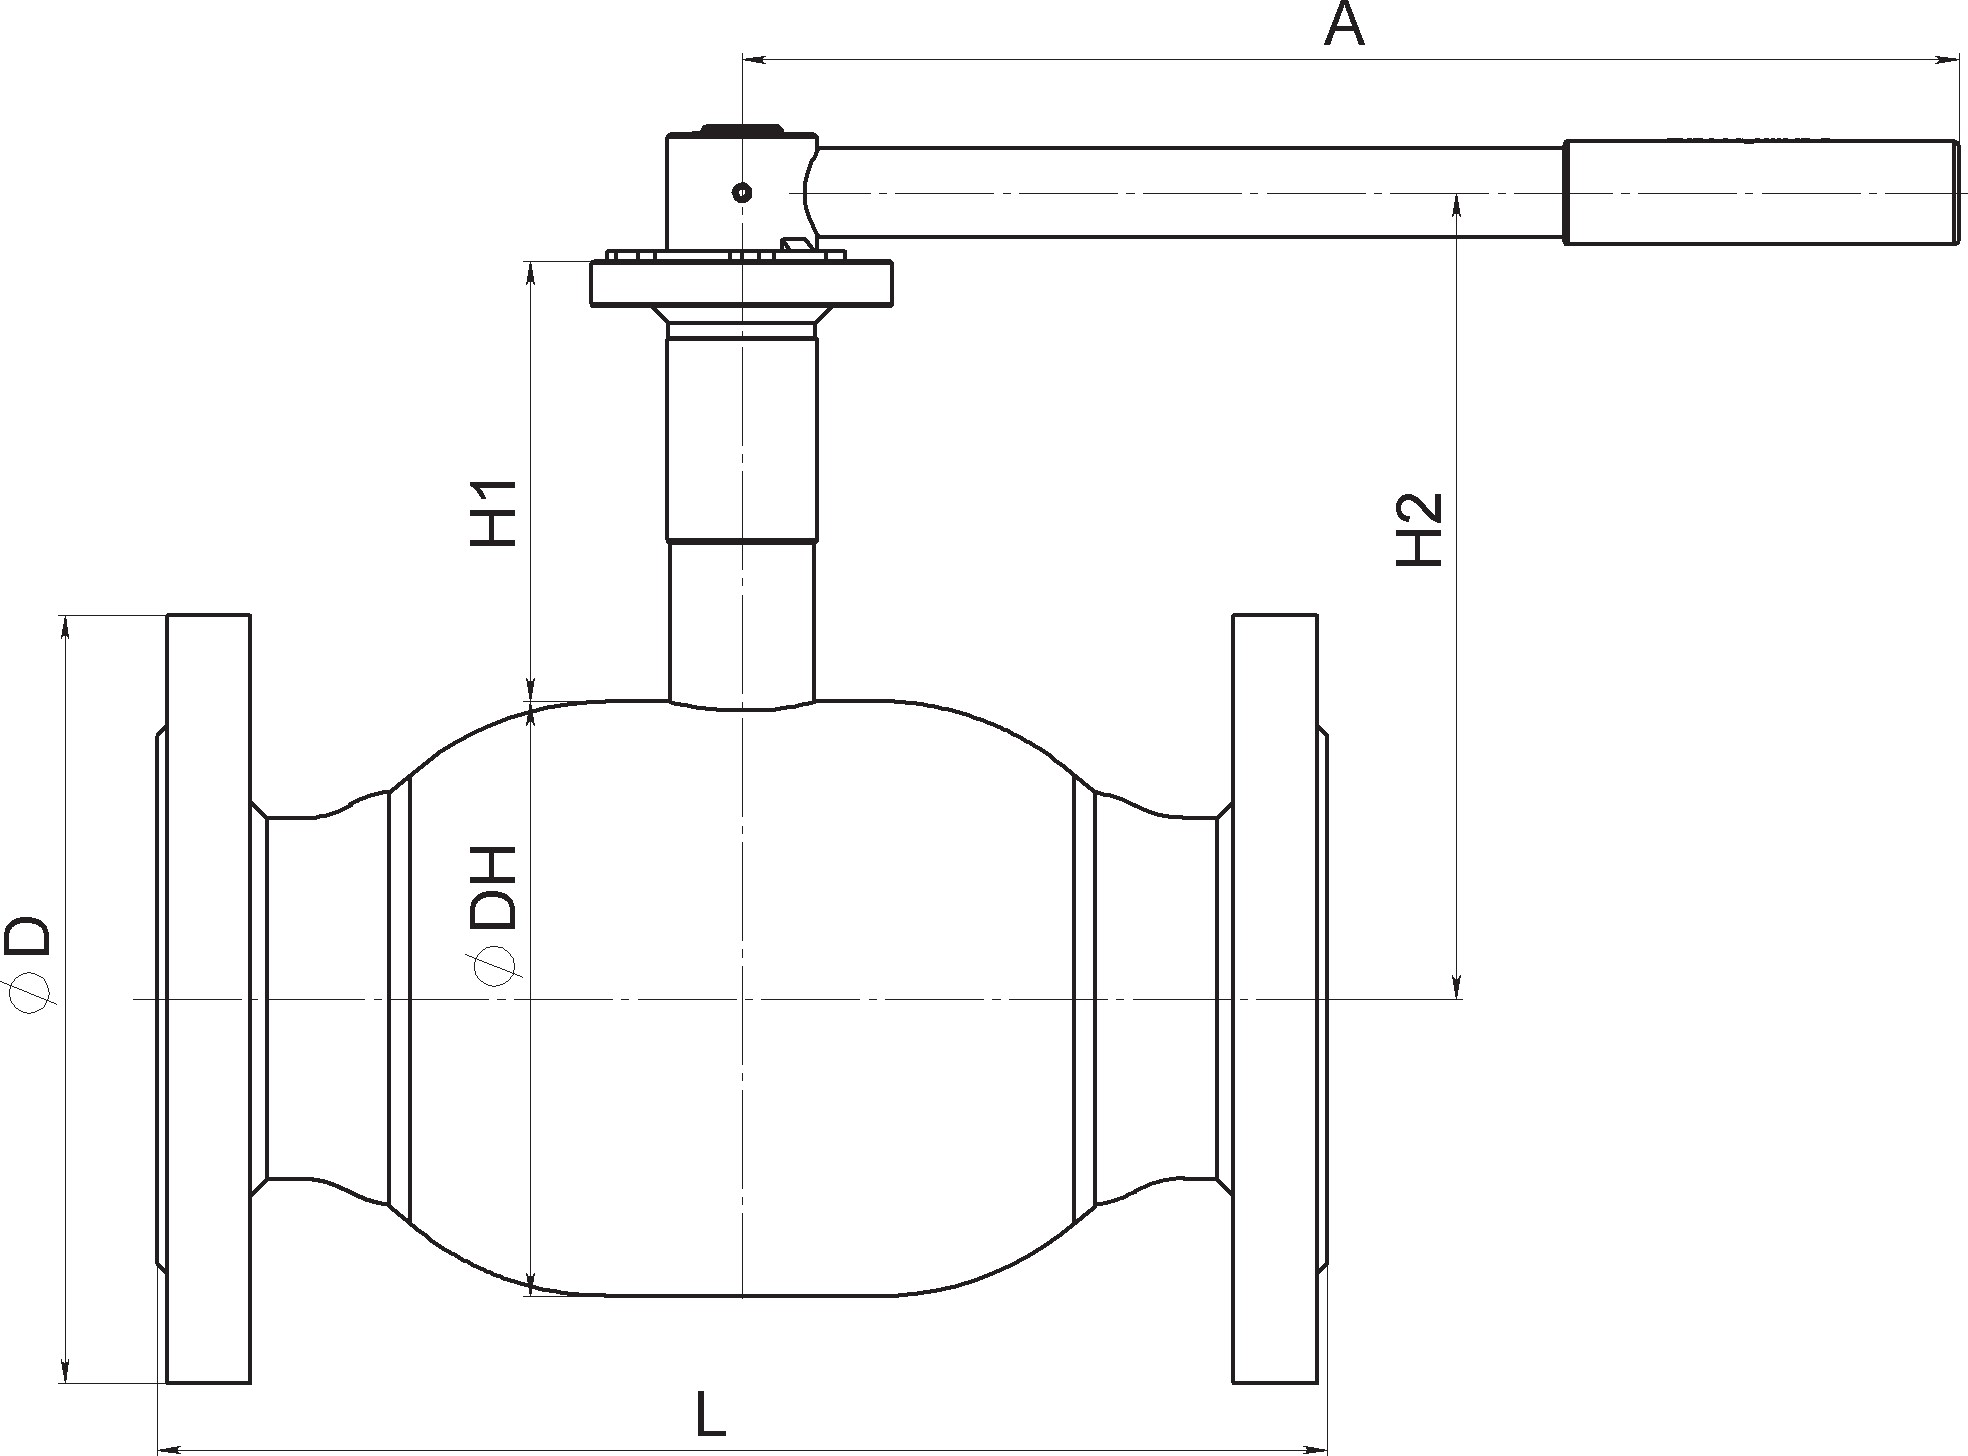 Кран шаровый Broen Ballomax-КШТ61.113А.16-25 Ду125 Ру16 полнопроходный с плавающим шаром, с ISO фланцем, корпус - сталь, уплотнение - EPDM, фланцевый, ручка-рычаг